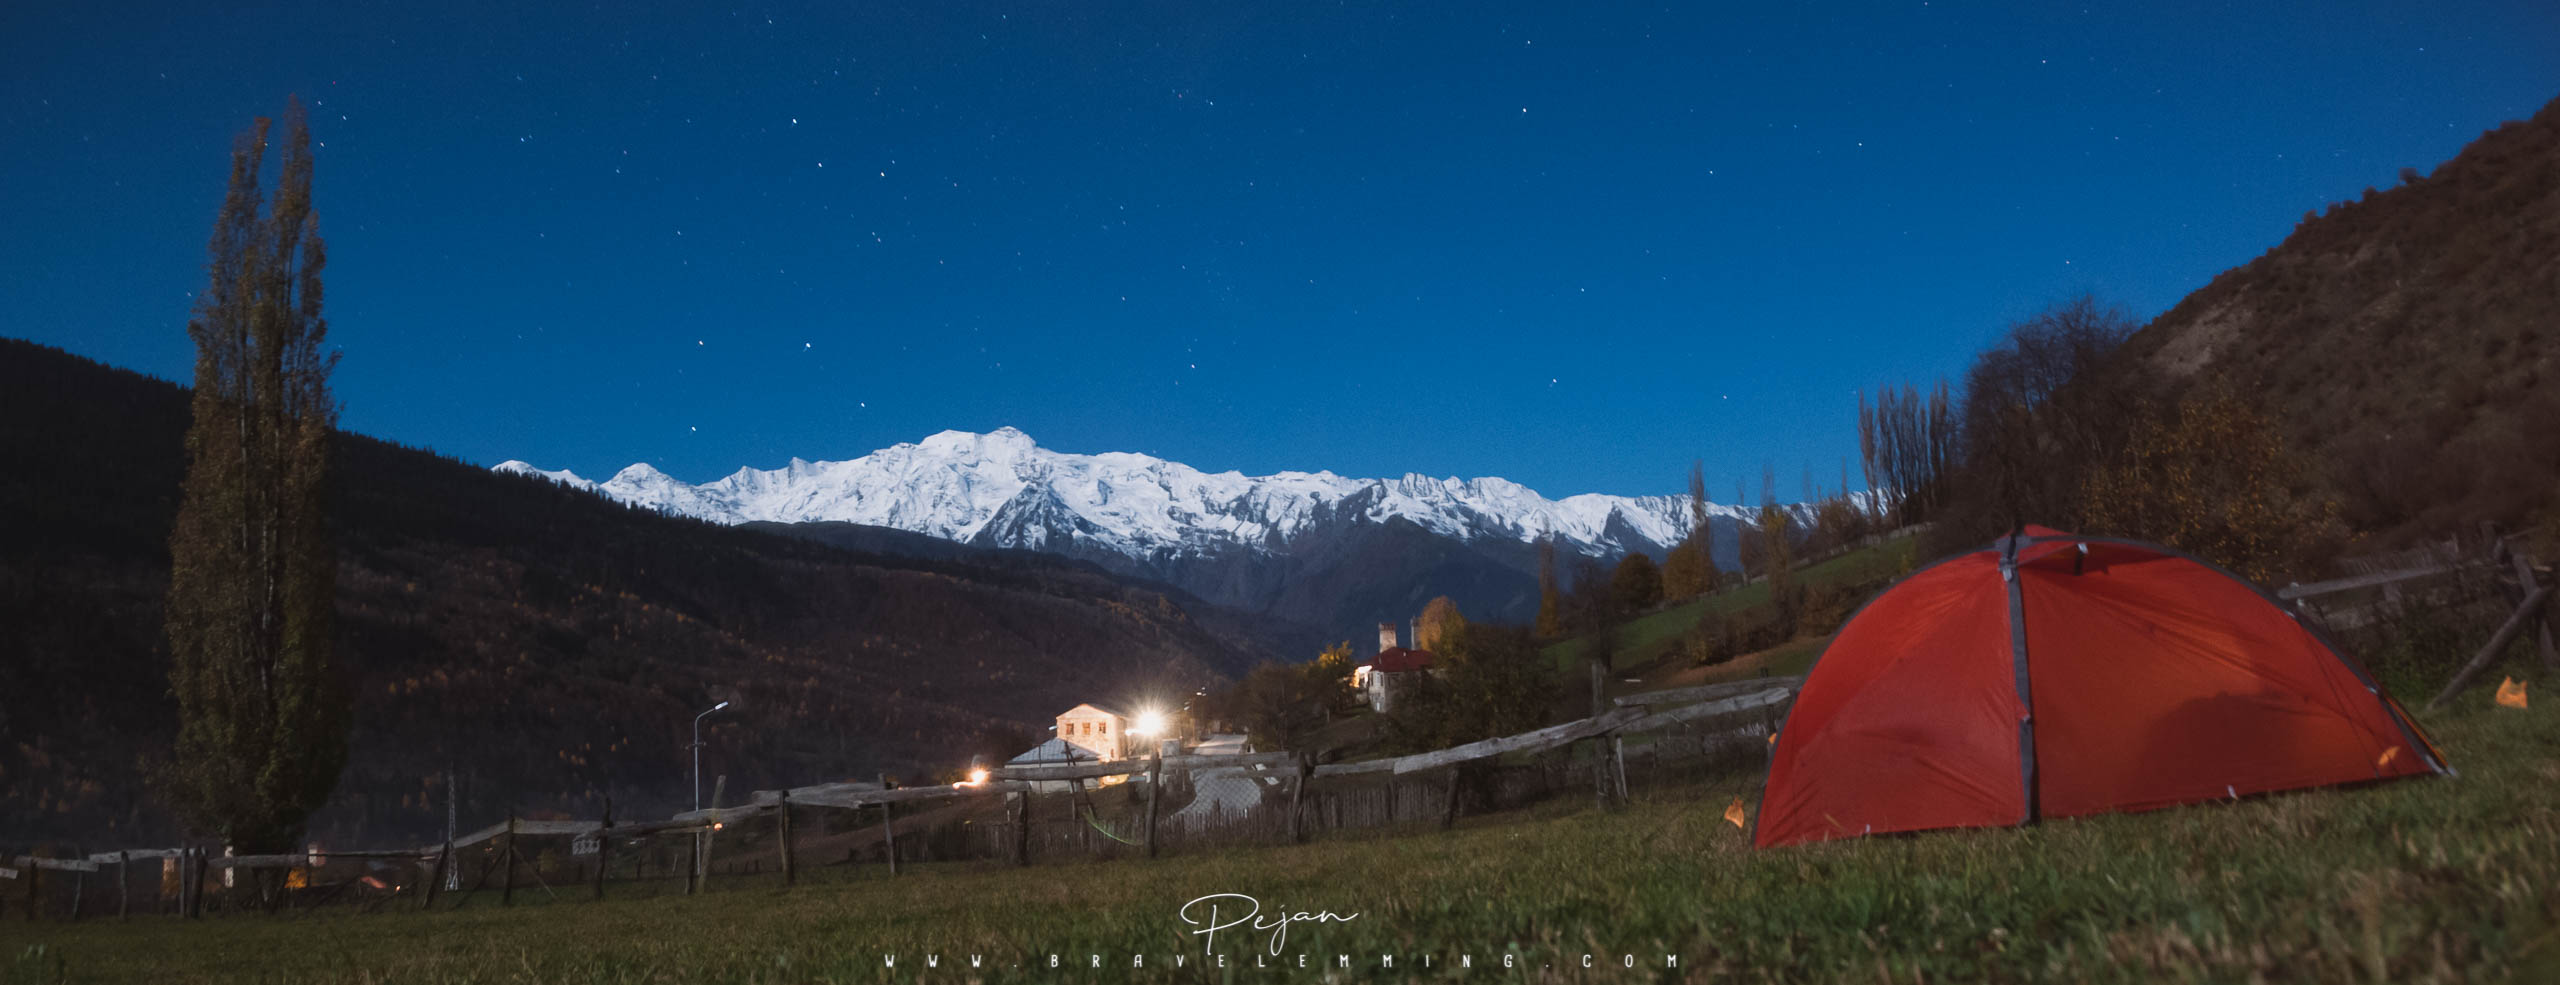 Camping dans le Caucase du Nord, Svaneti, Géorgie